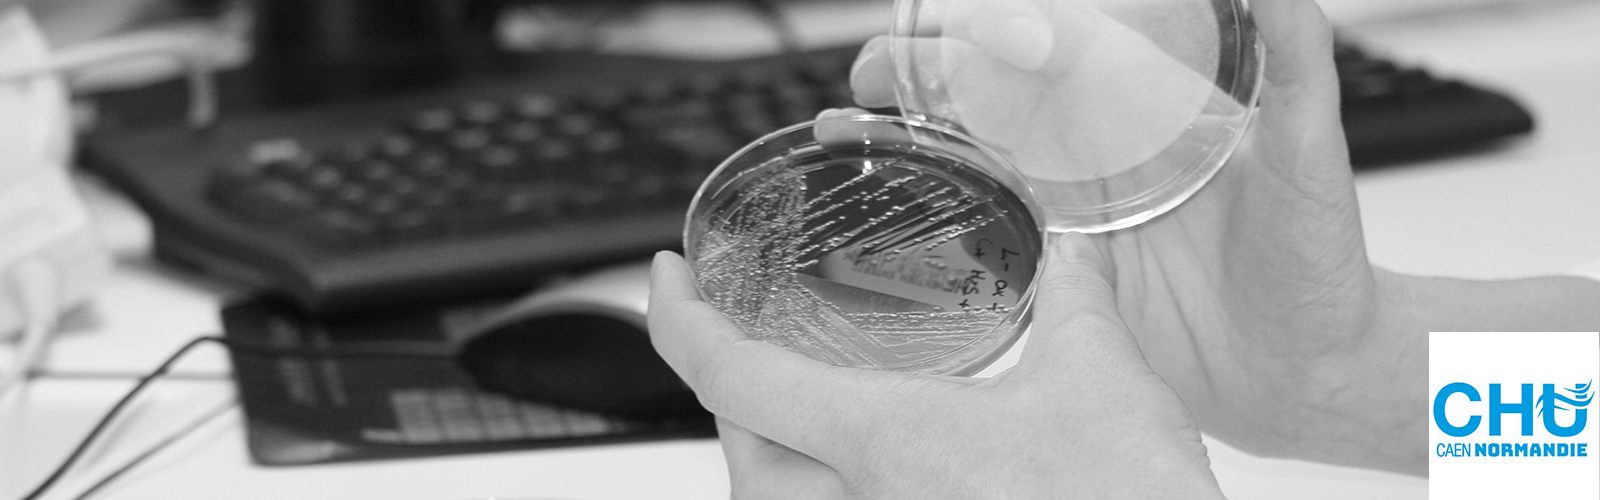 Microbiologia paperless, per una migliore qualità, tracciabilità ed efficienza in laboratorio